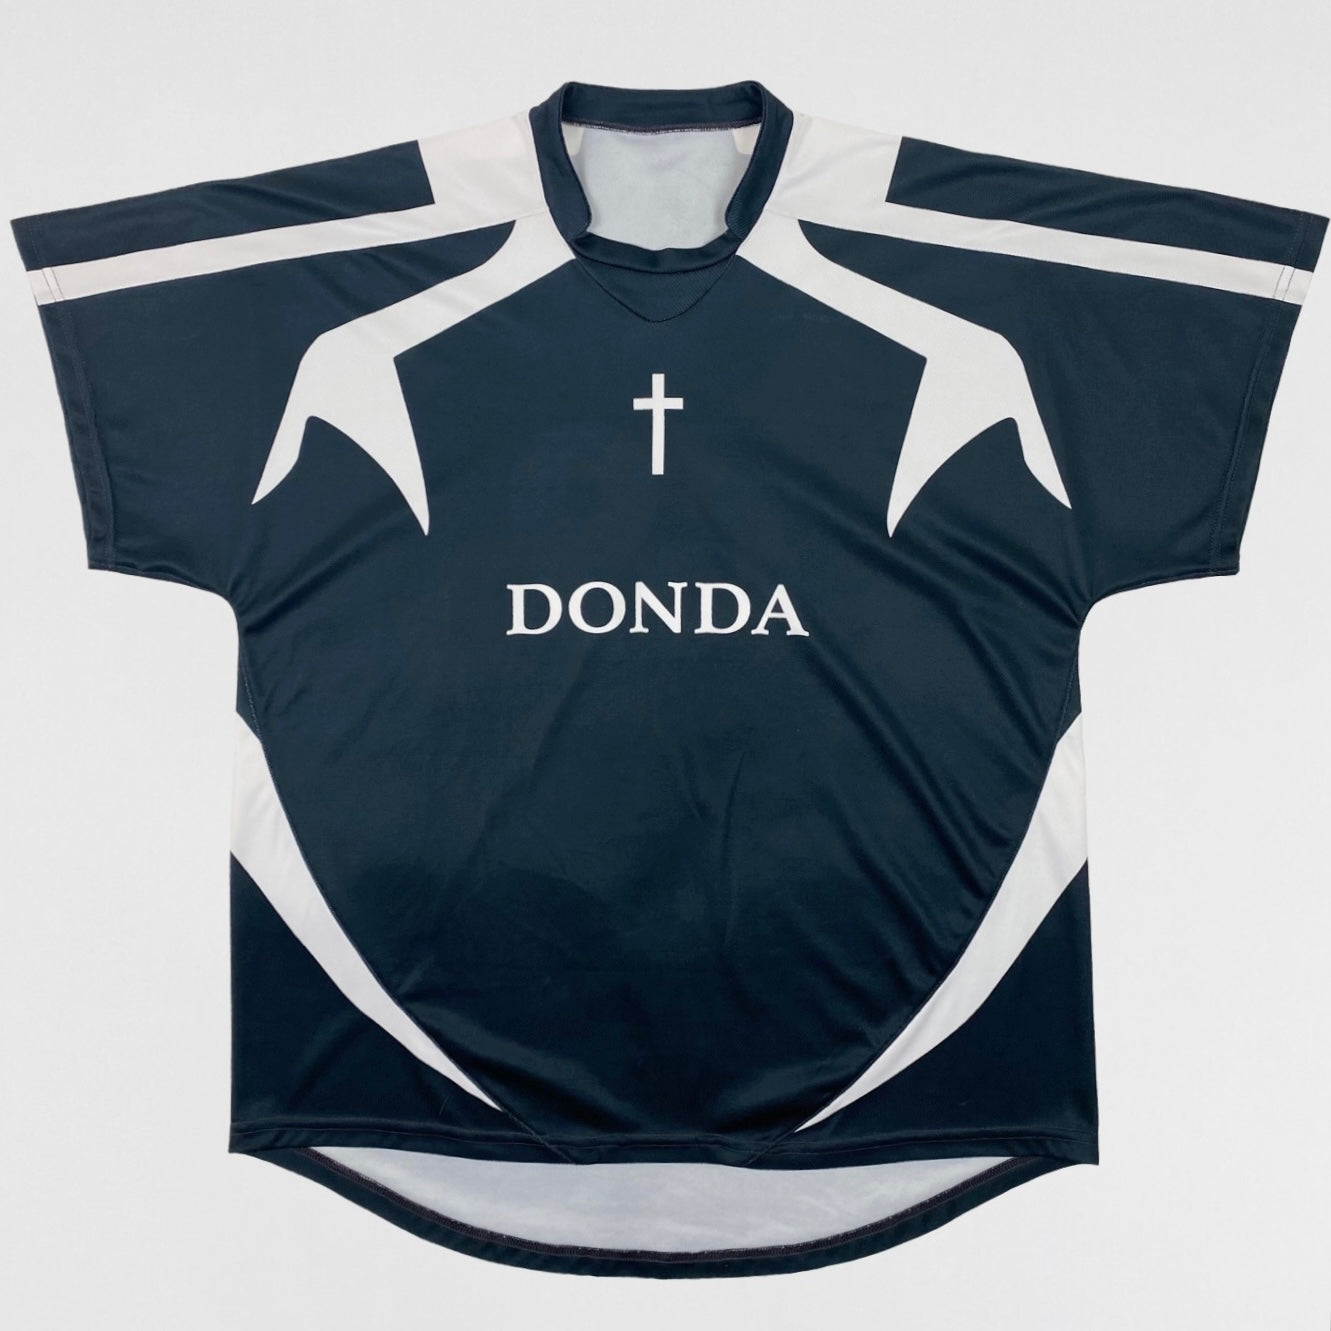 Donda 2021 Football Jersey By Demna Gvasalia